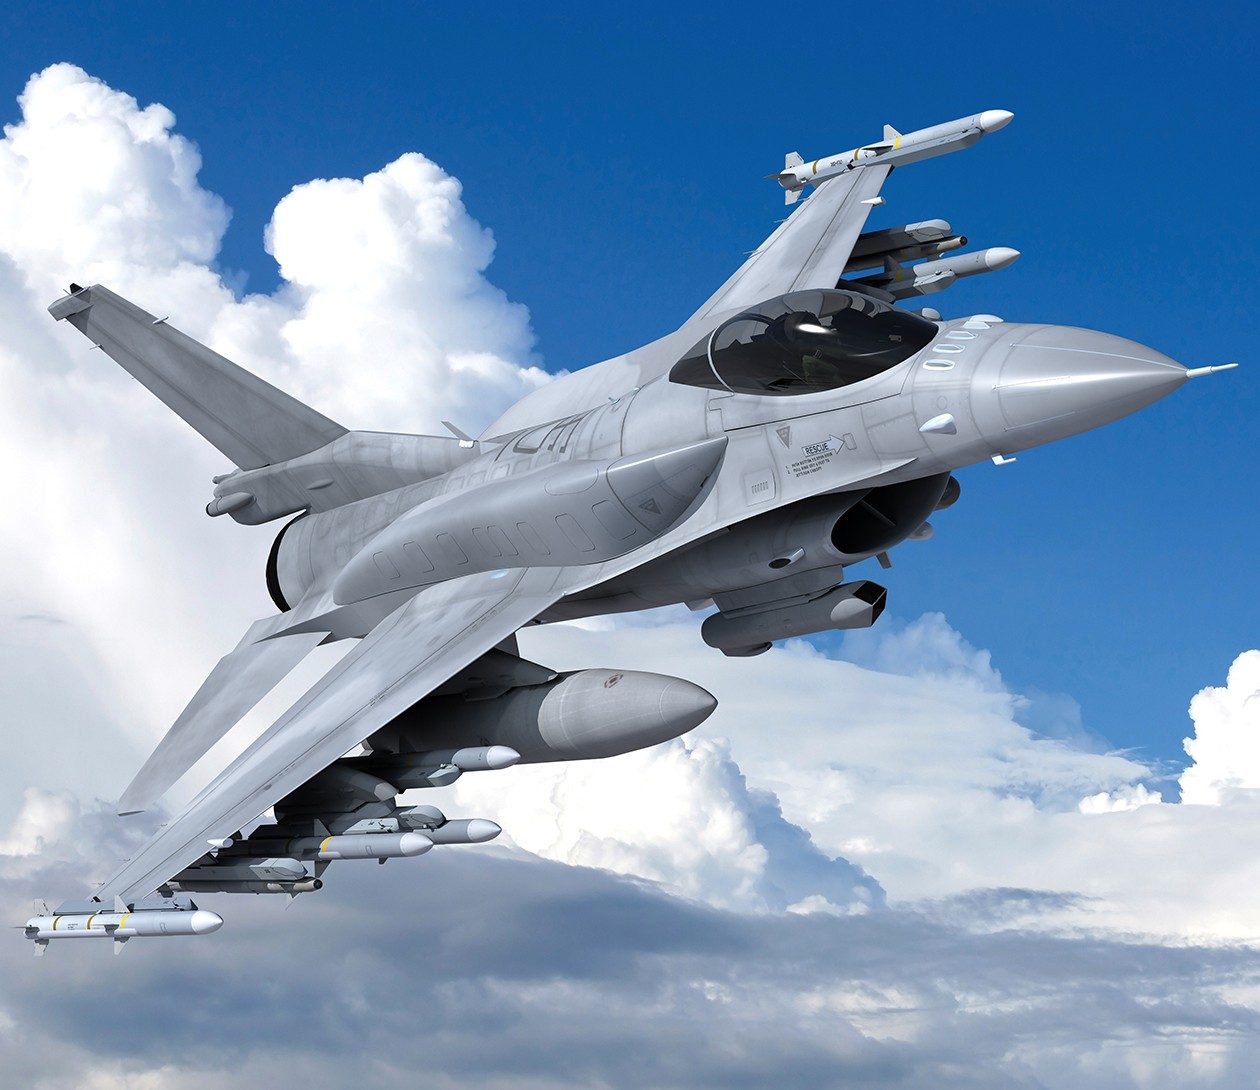 LM: To 2021 ξεκινά η εγκατάσταση των συστημάτων στα υπό αναβάθμιση F-16 της ΠΑ